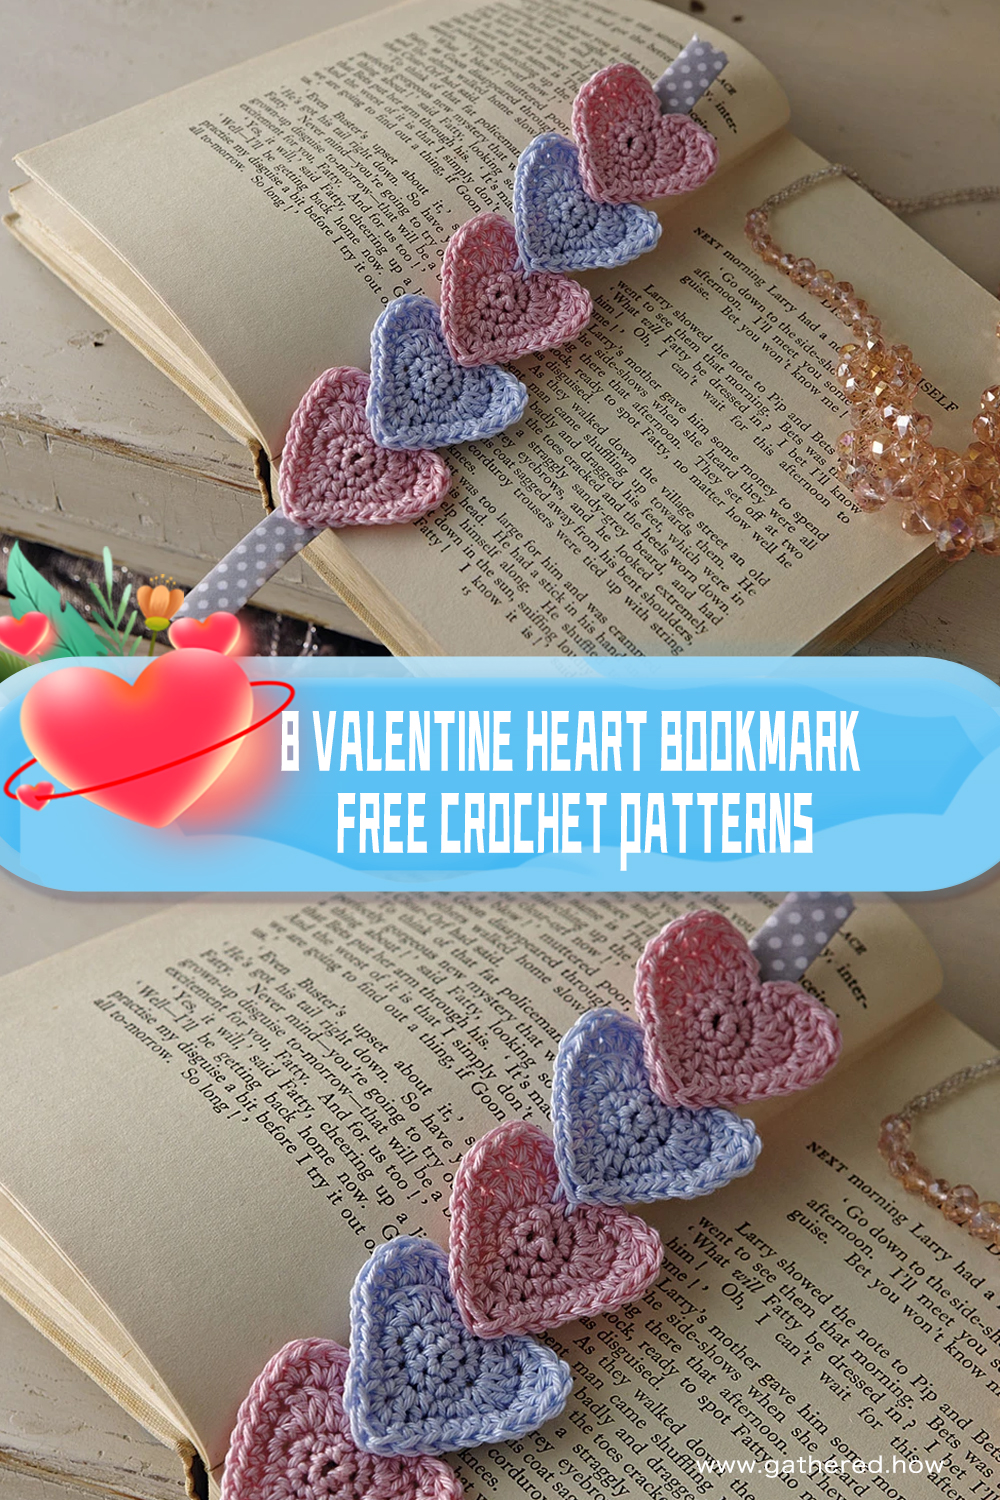 8 Valentine Heart Bookmark FREE Crochet Patterns